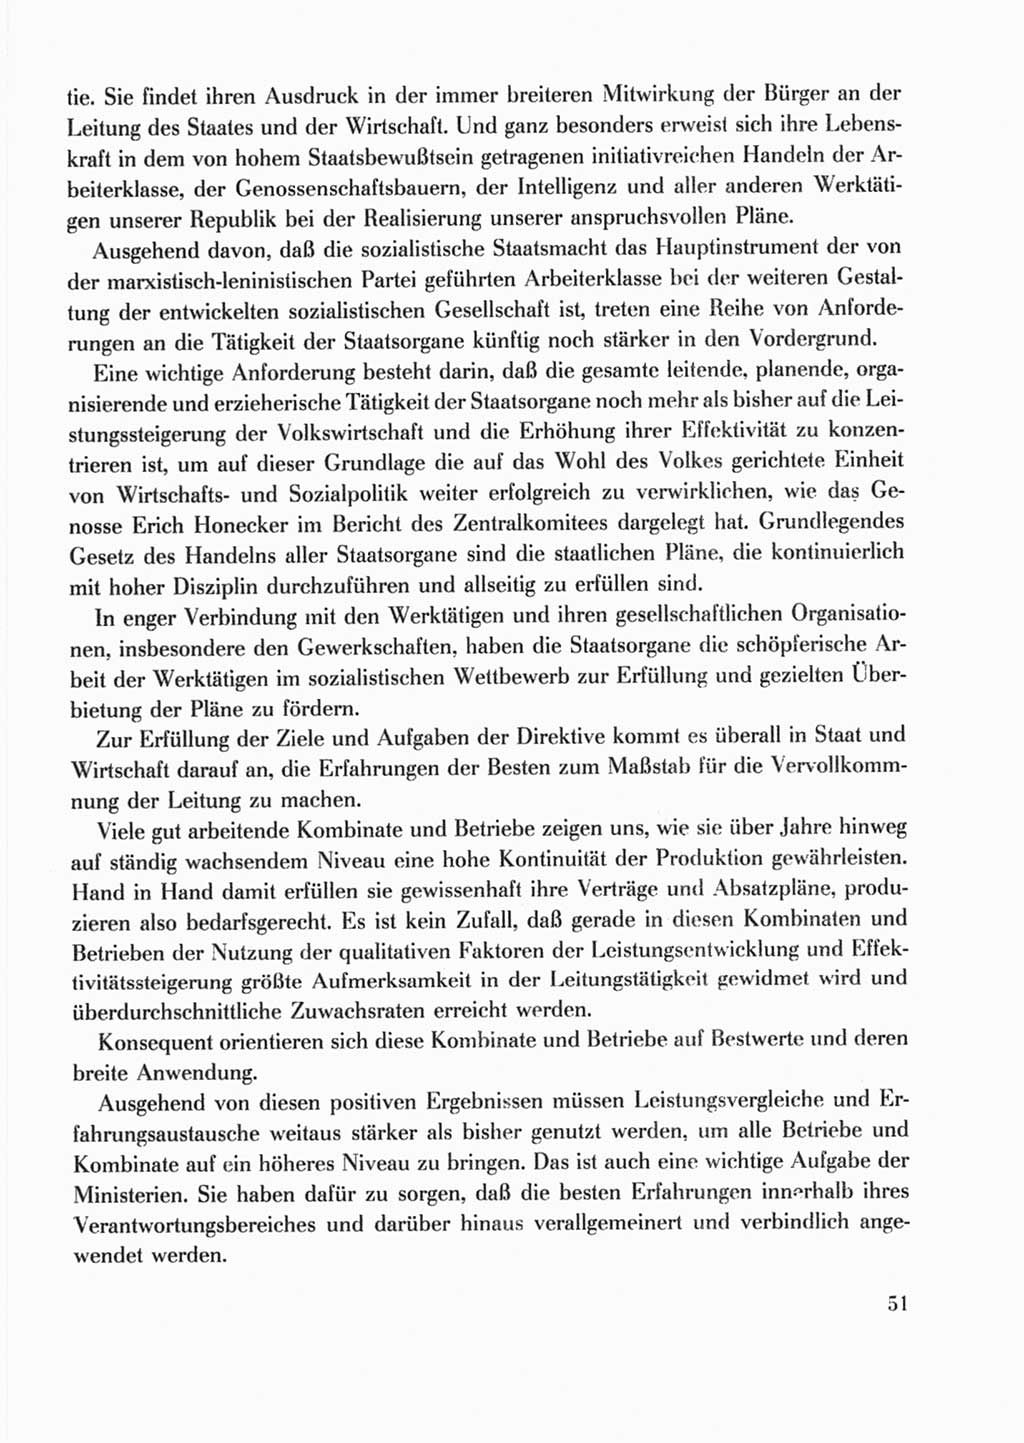 Protokoll der Verhandlungen des Ⅹ. Parteitages der Sozialistischen Einheitspartei Deutschlands (SED) [Deutsche Demokratische Republik (DDR)] 1981, Band 2, Seite 51 (Prot. Verh. Ⅹ. PT SED DDR 1981, Bd. 2, S. 51)